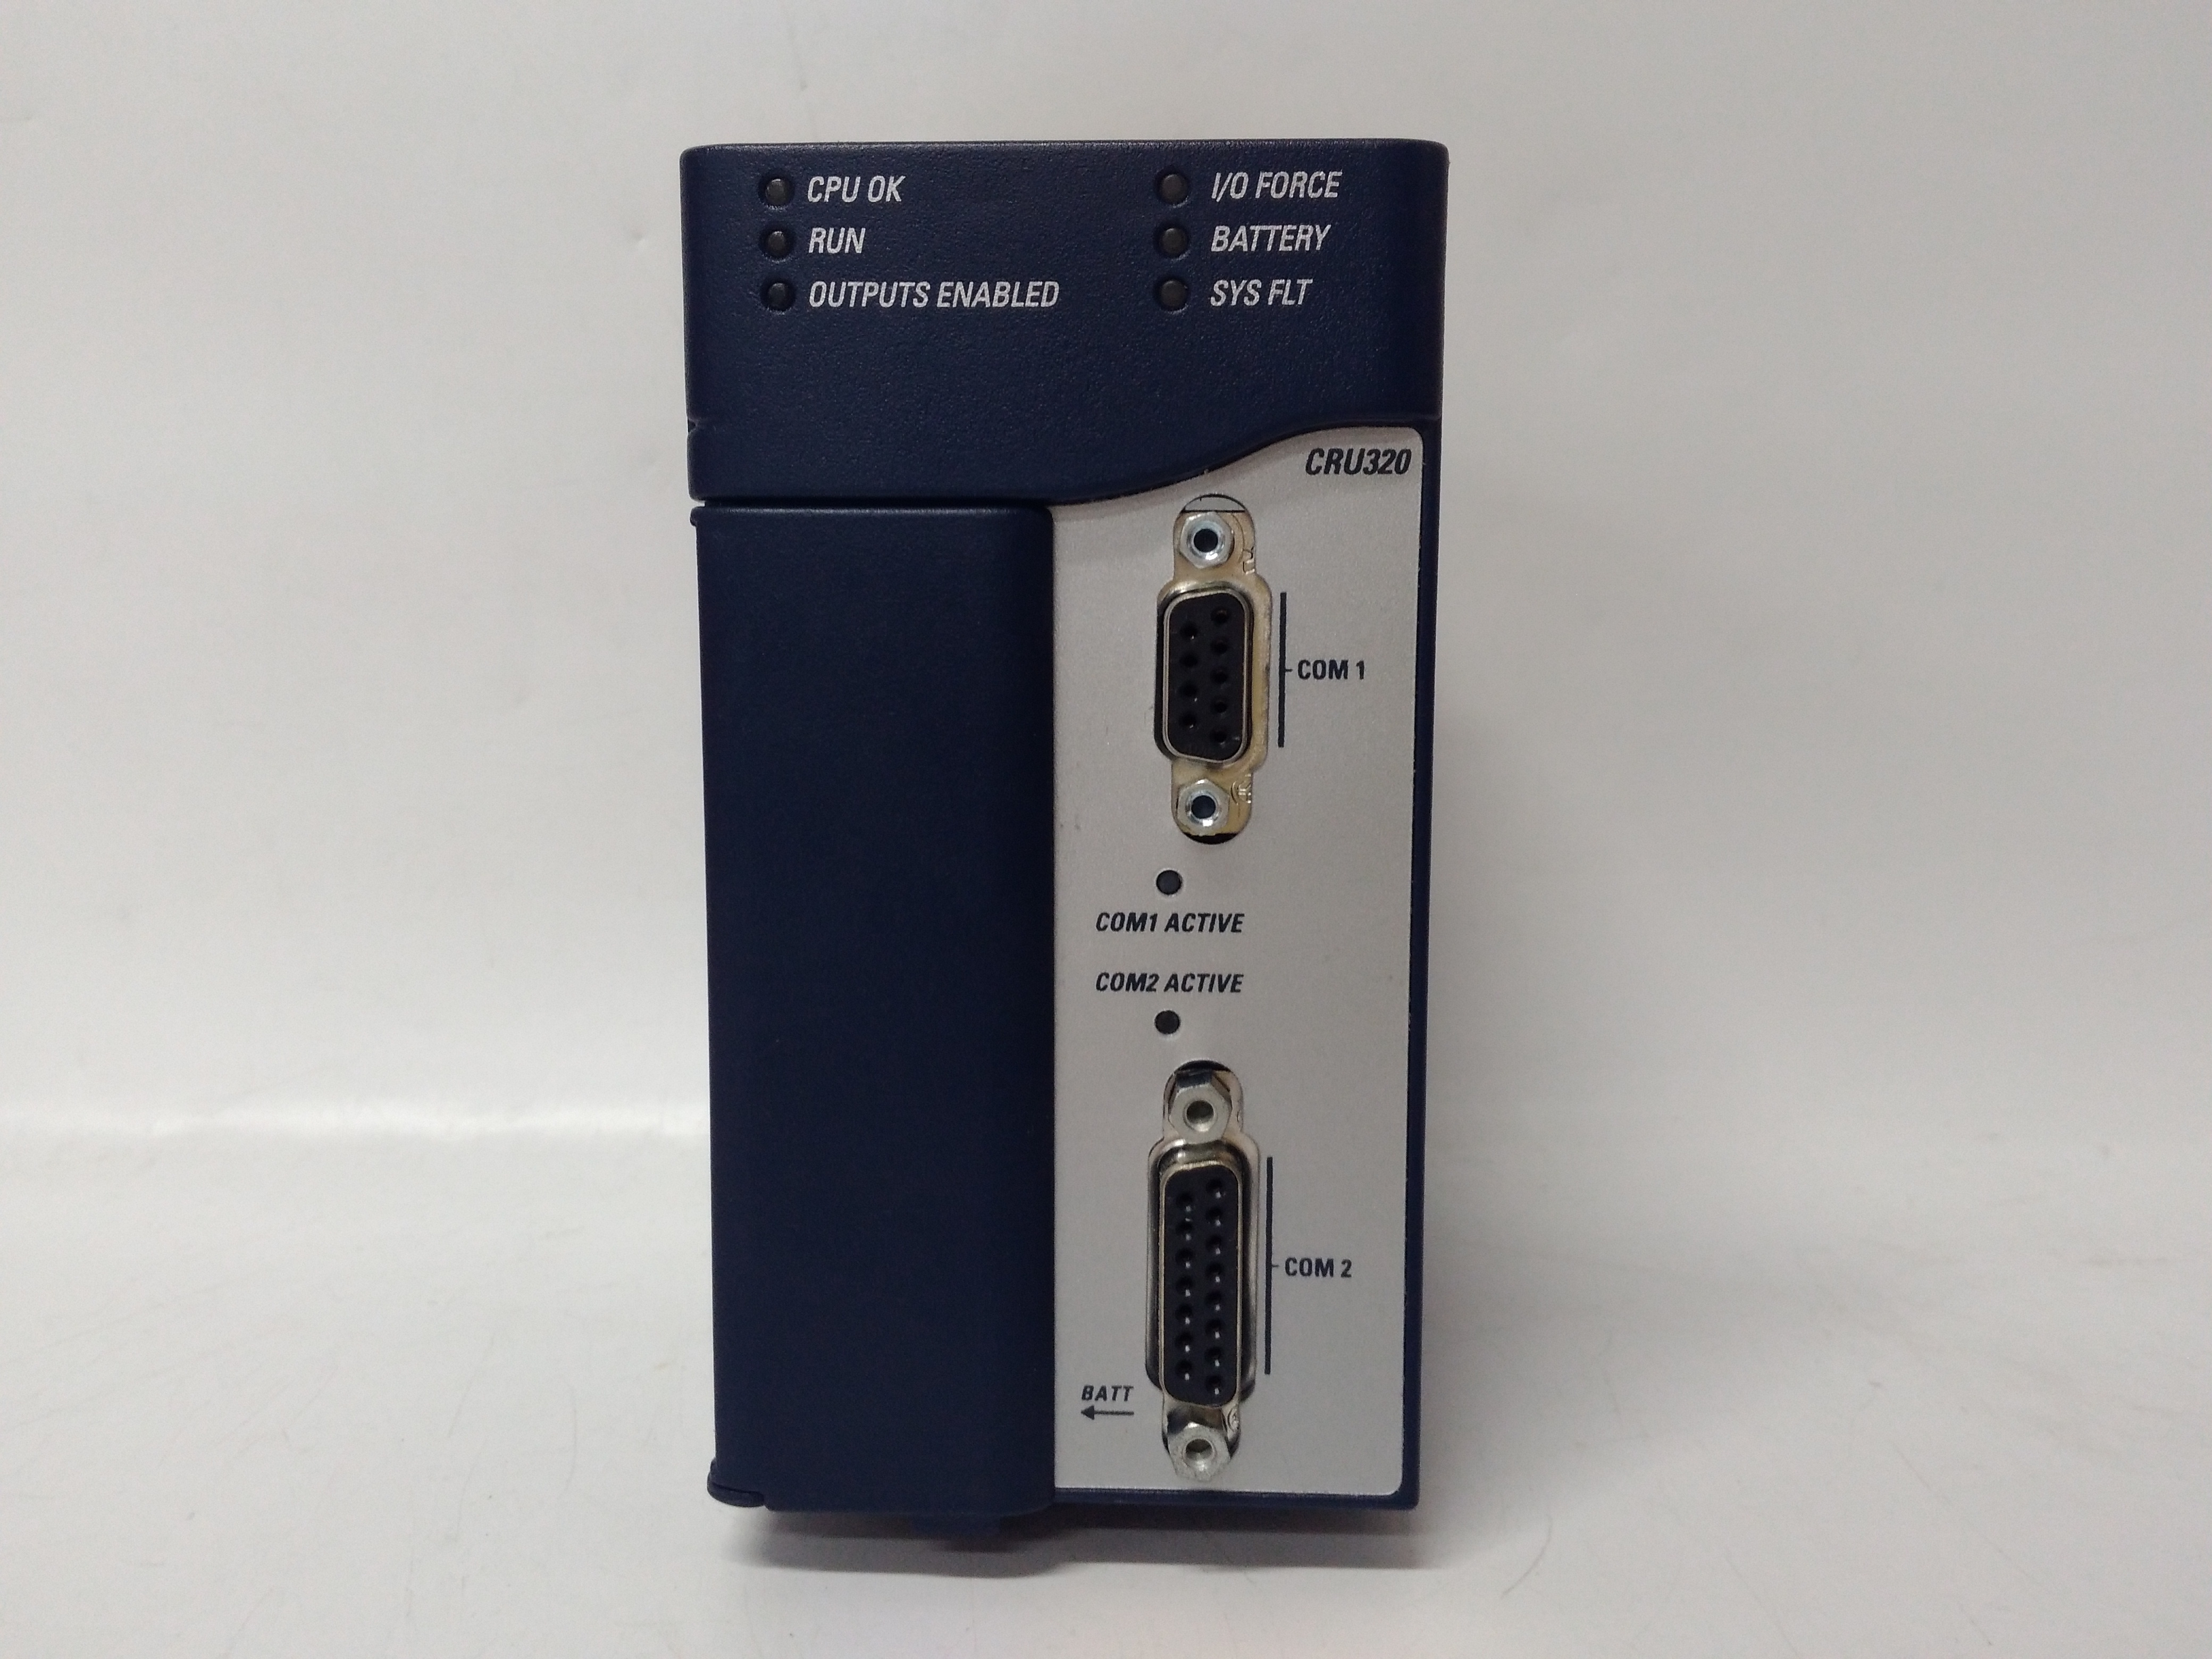 IC695NIU001美国GE通用电气PLC模块-IC695系列 全新原装,库存现货,质保1年